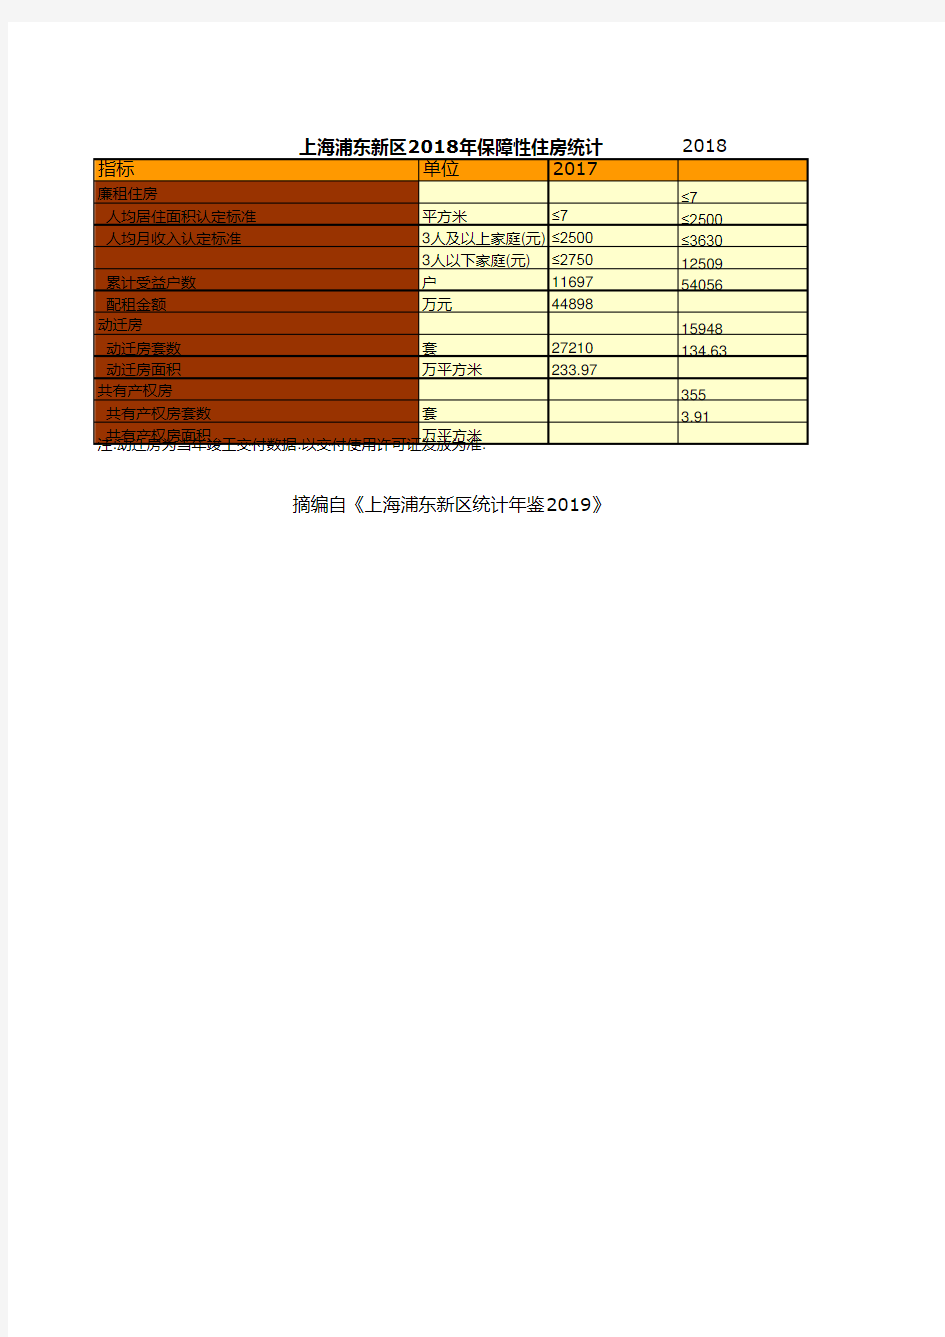 上海浦东新区统计年鉴社会经济发展指标数据：2018年保障性住房统计